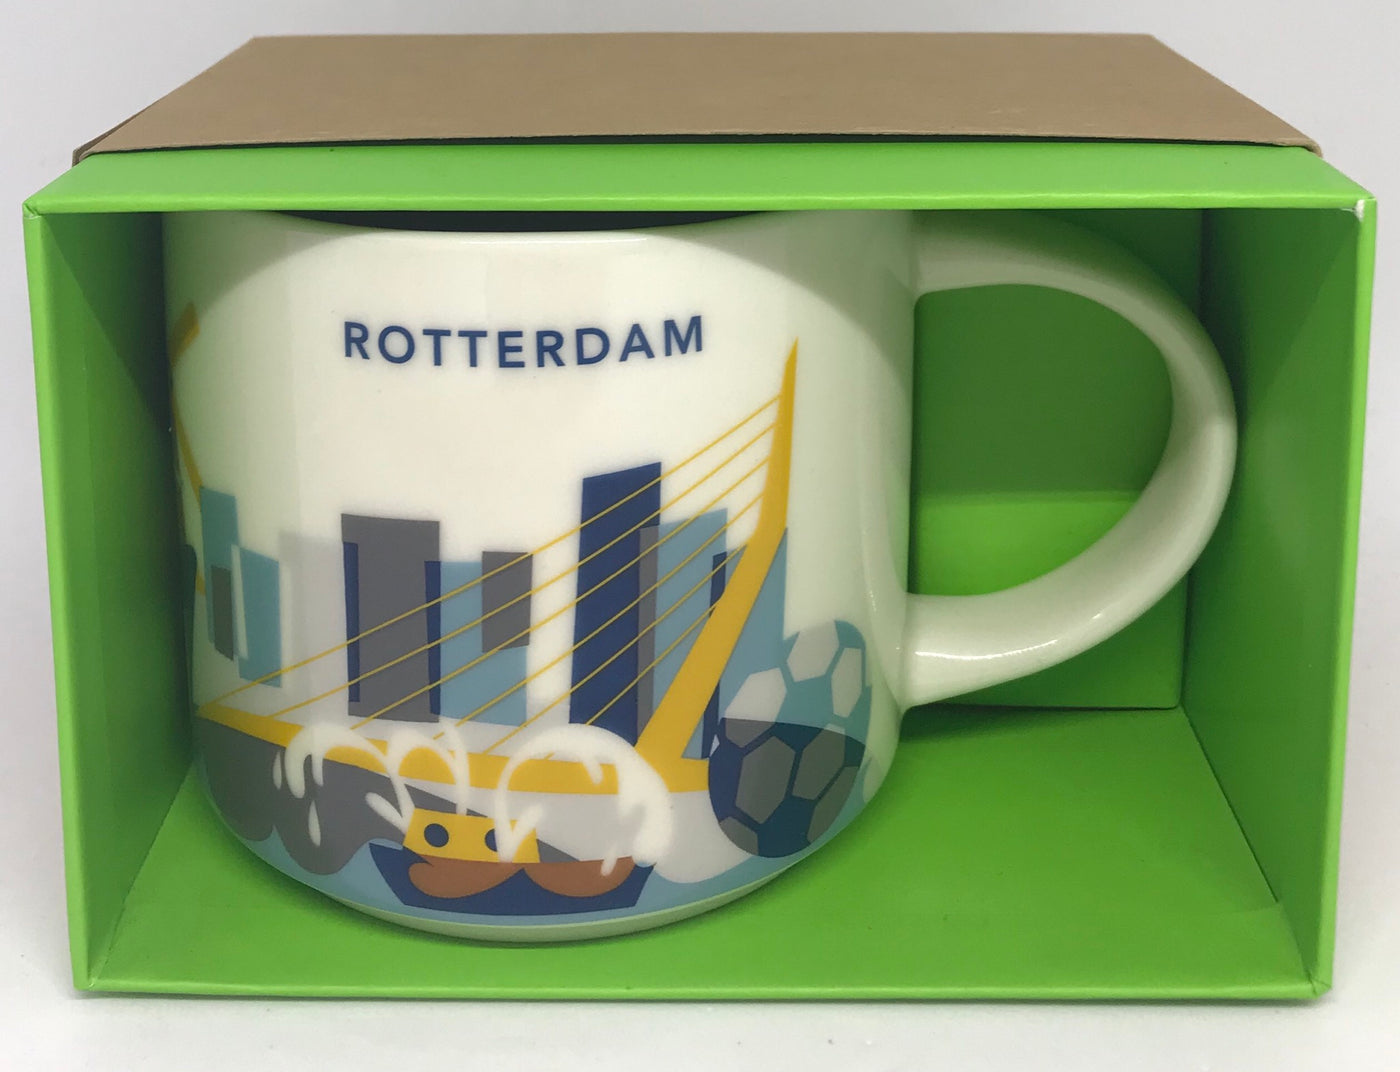 Starbucks You Are Here Rotterdam Netherland Ceramic Coffee Mug New with Box